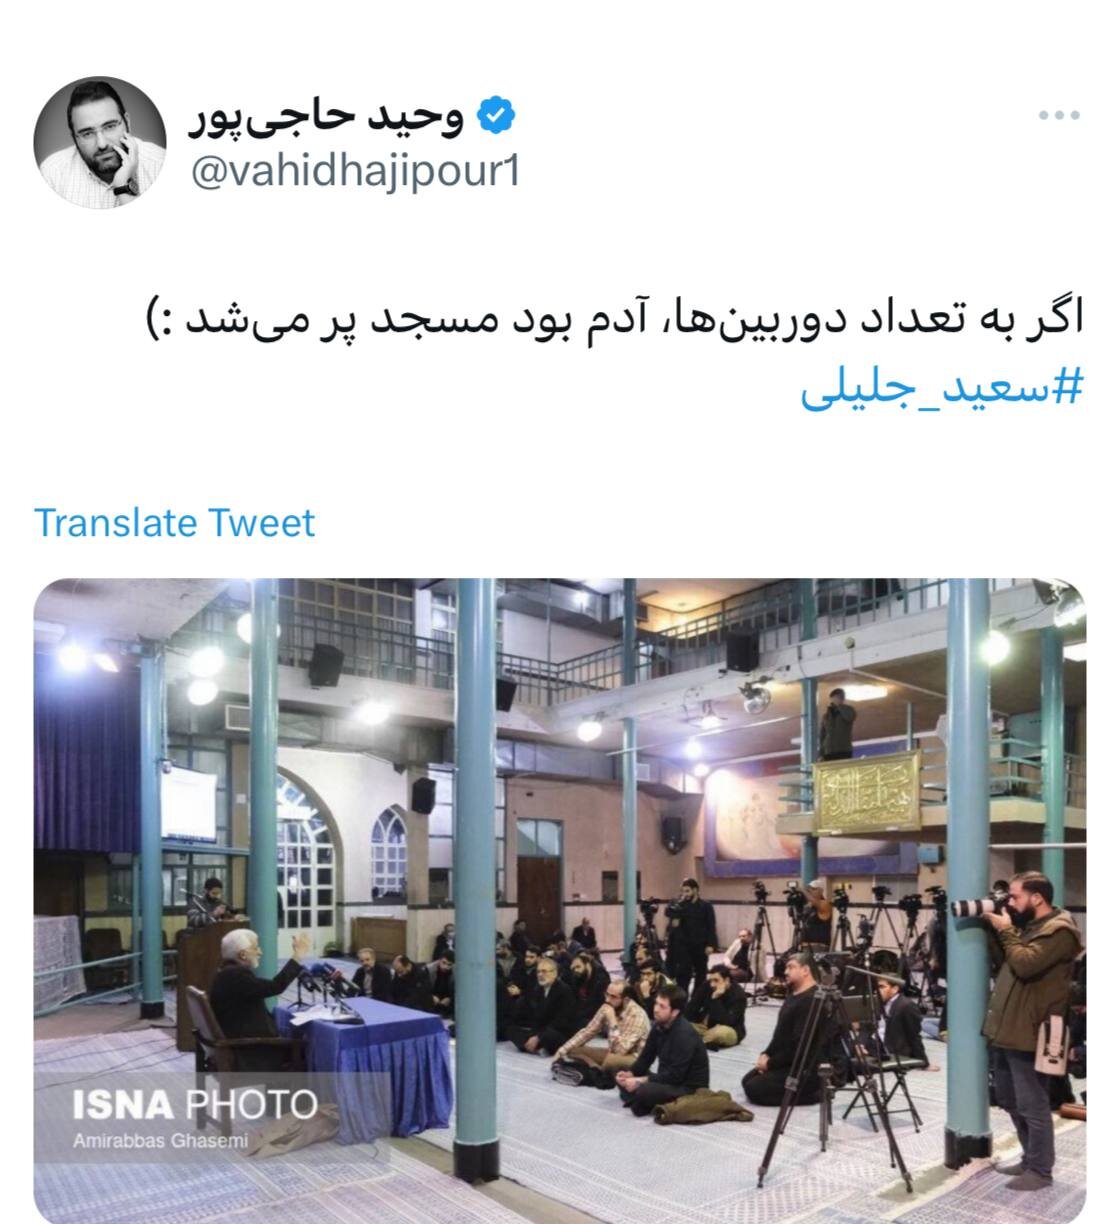 عکس عجیب از سخنرانی سعید جلیلی /تعداد دوربین ها بیشتر از حاضران نشست بود!